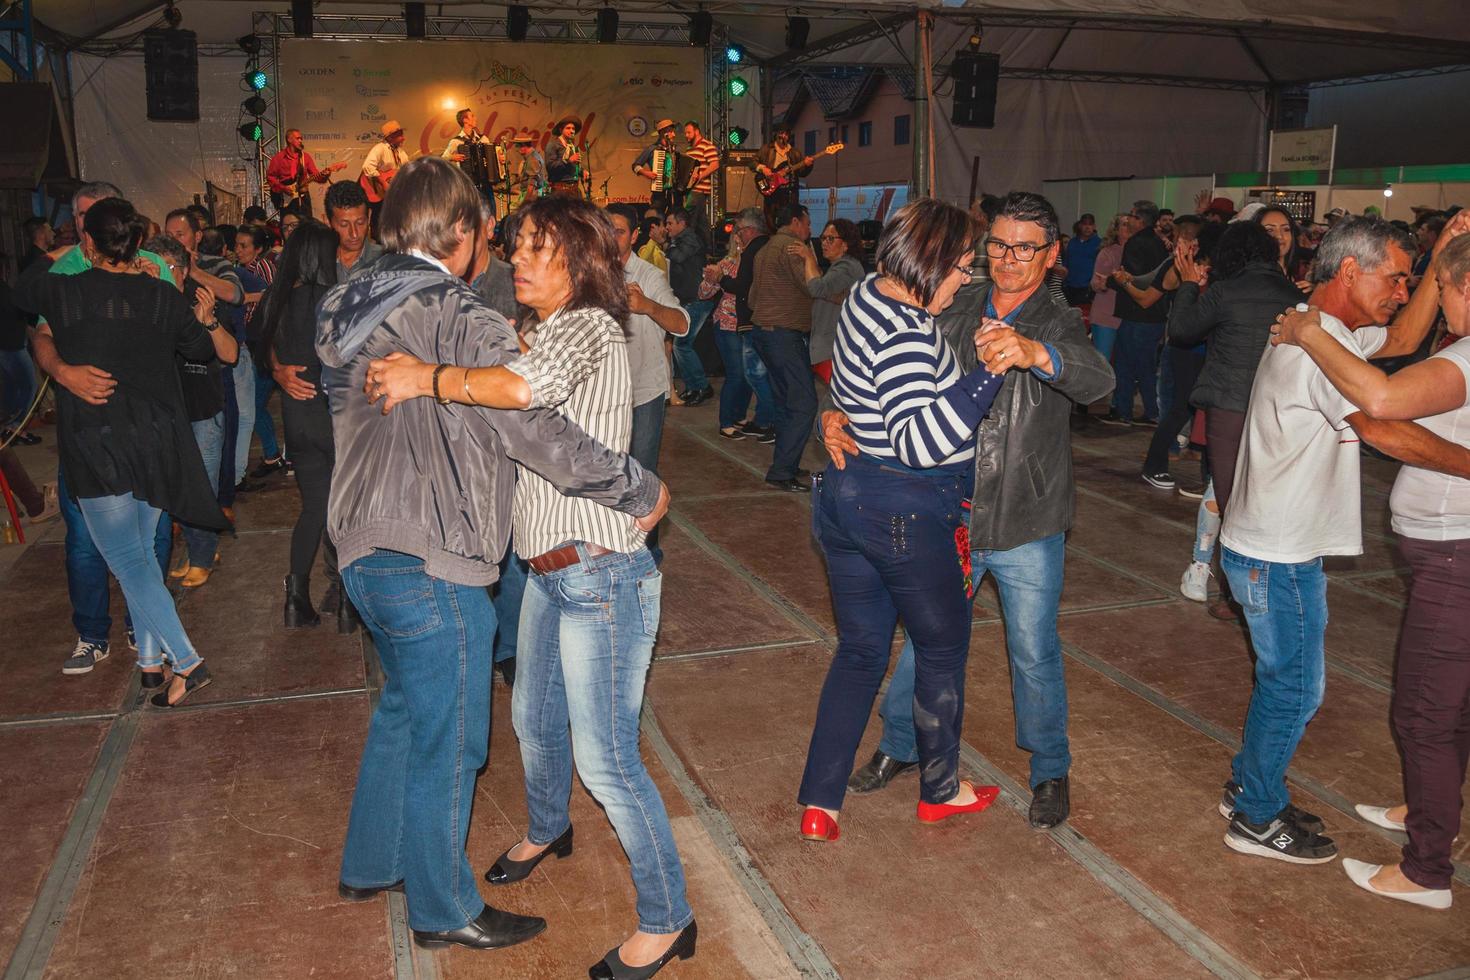 canela, Brasilien - 21 juli 2019. människor som dansar traditionella sånger framförda av musiker på scenen av en folkloristisk festival i canela. en charmig liten stad mycket populär genom sin ekoturism. foto